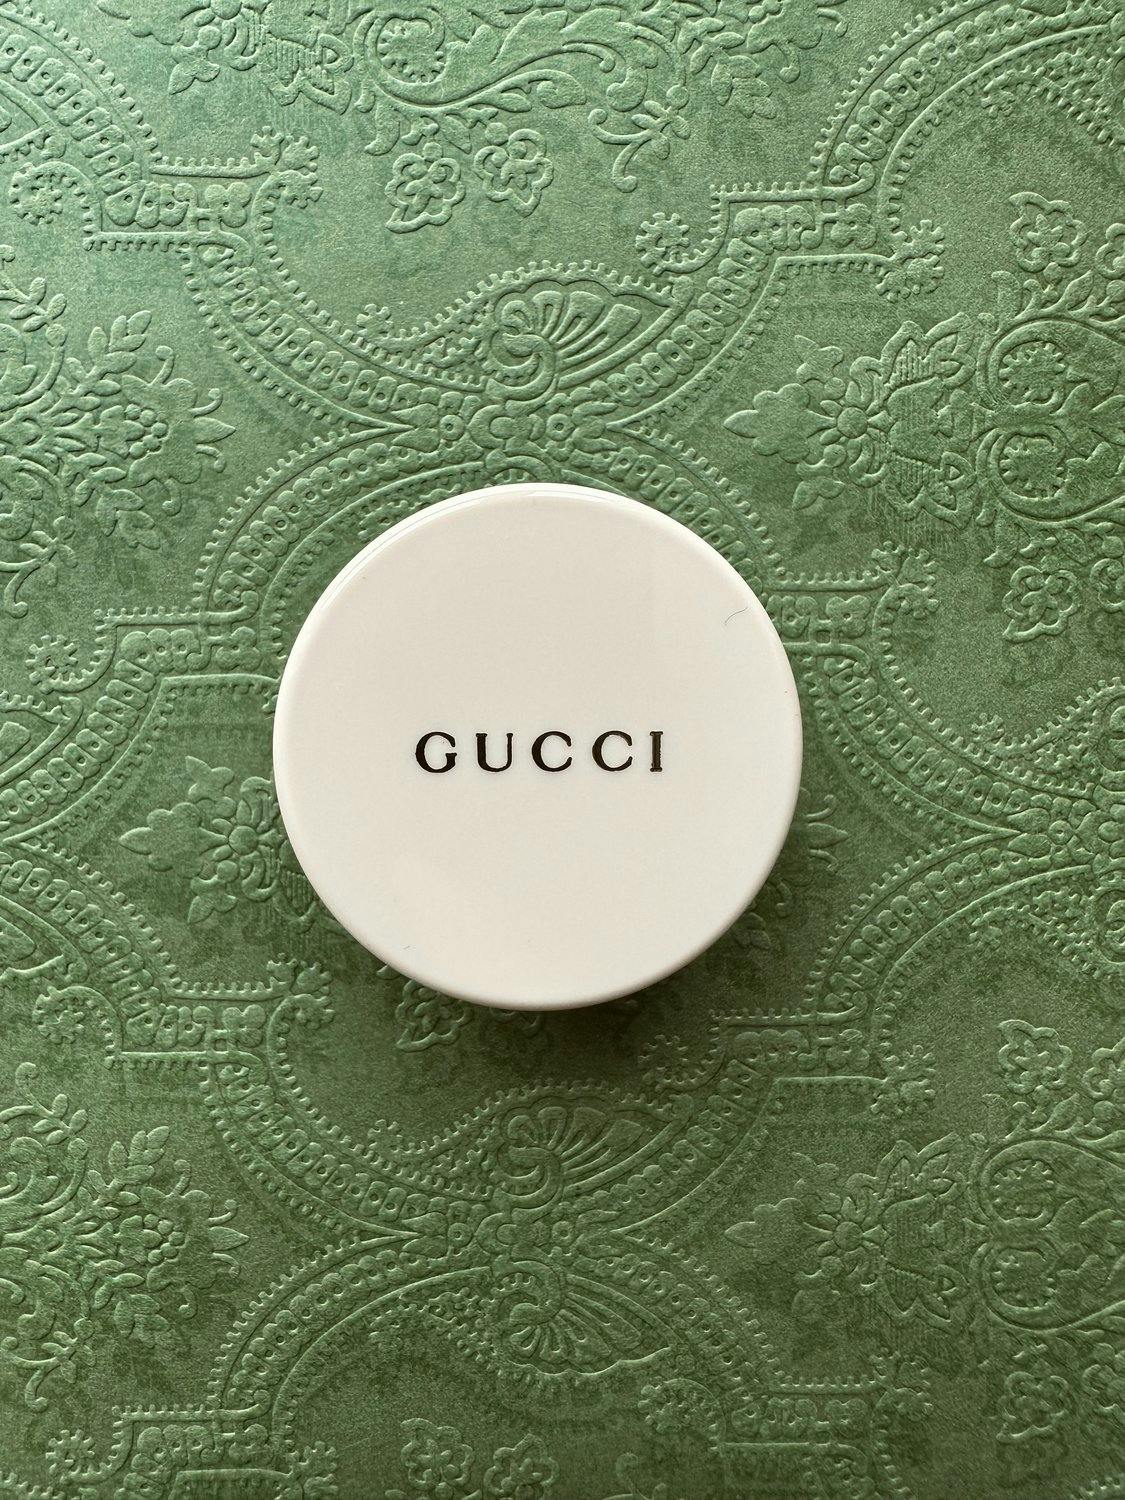 Gucci lip products by Sachini Dilanka